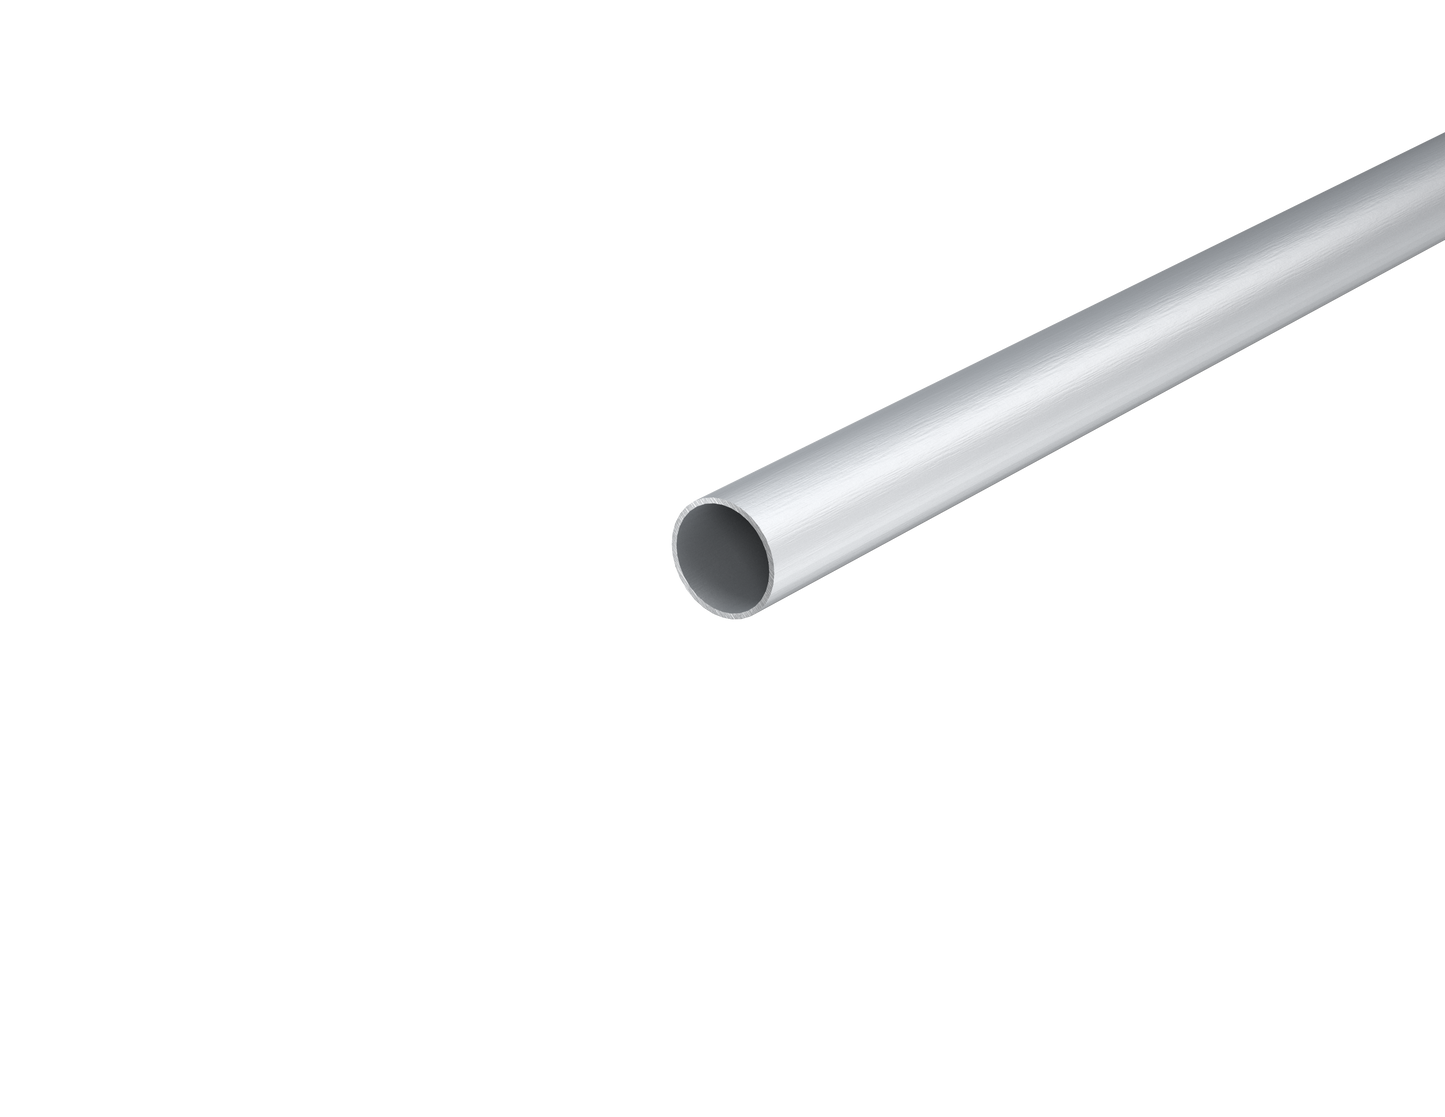 1" Aluminum Round Telescopic Tube